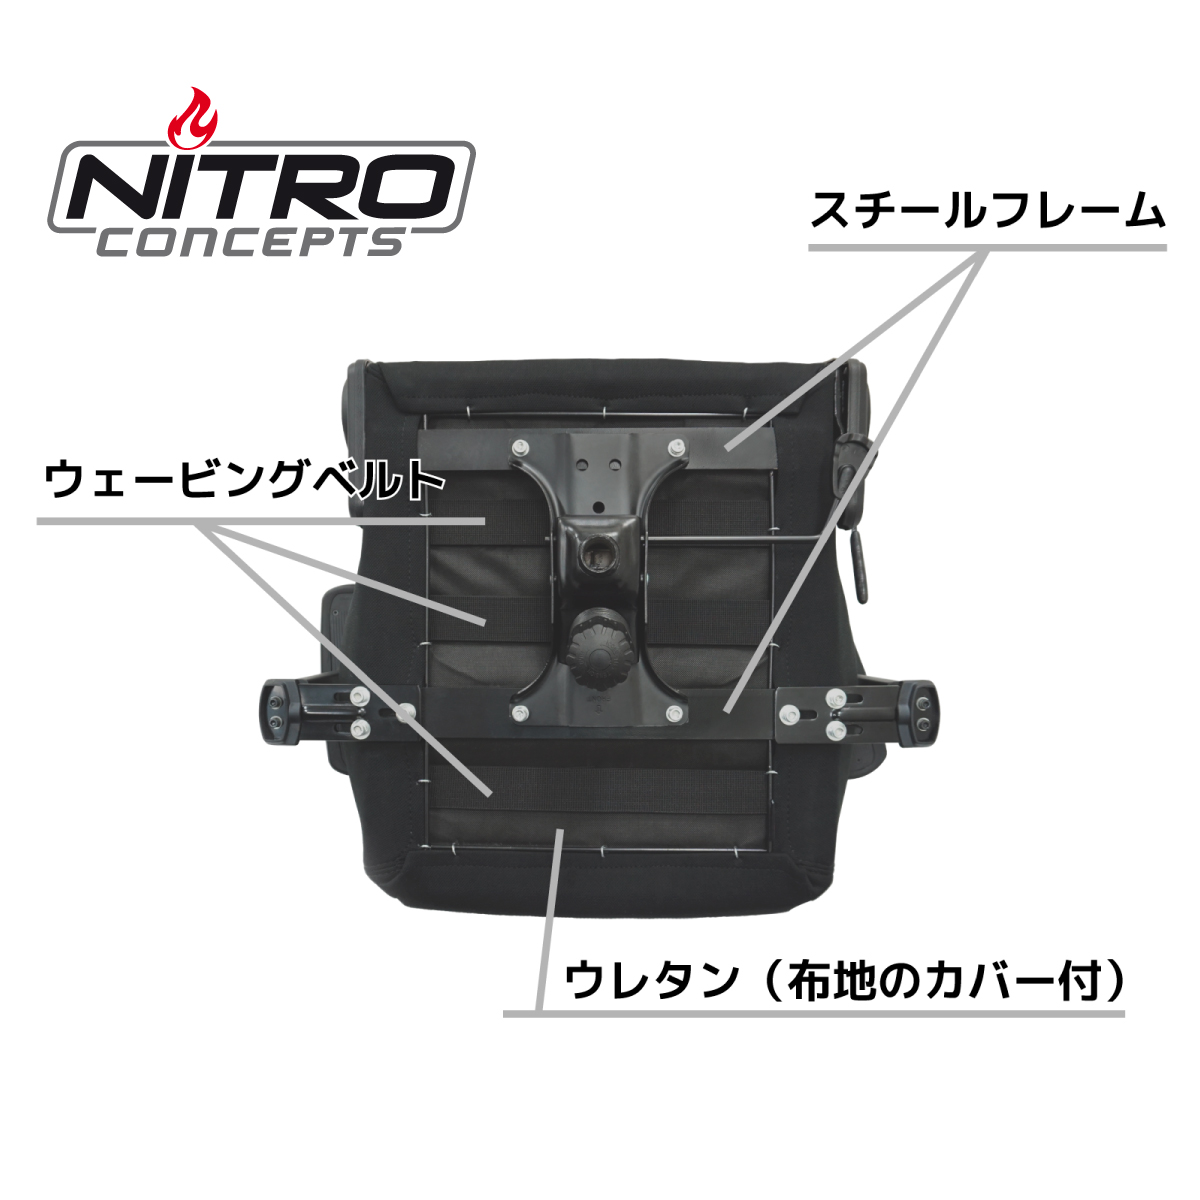 Nitro Concepts S300 - 株式会社アーキサイト